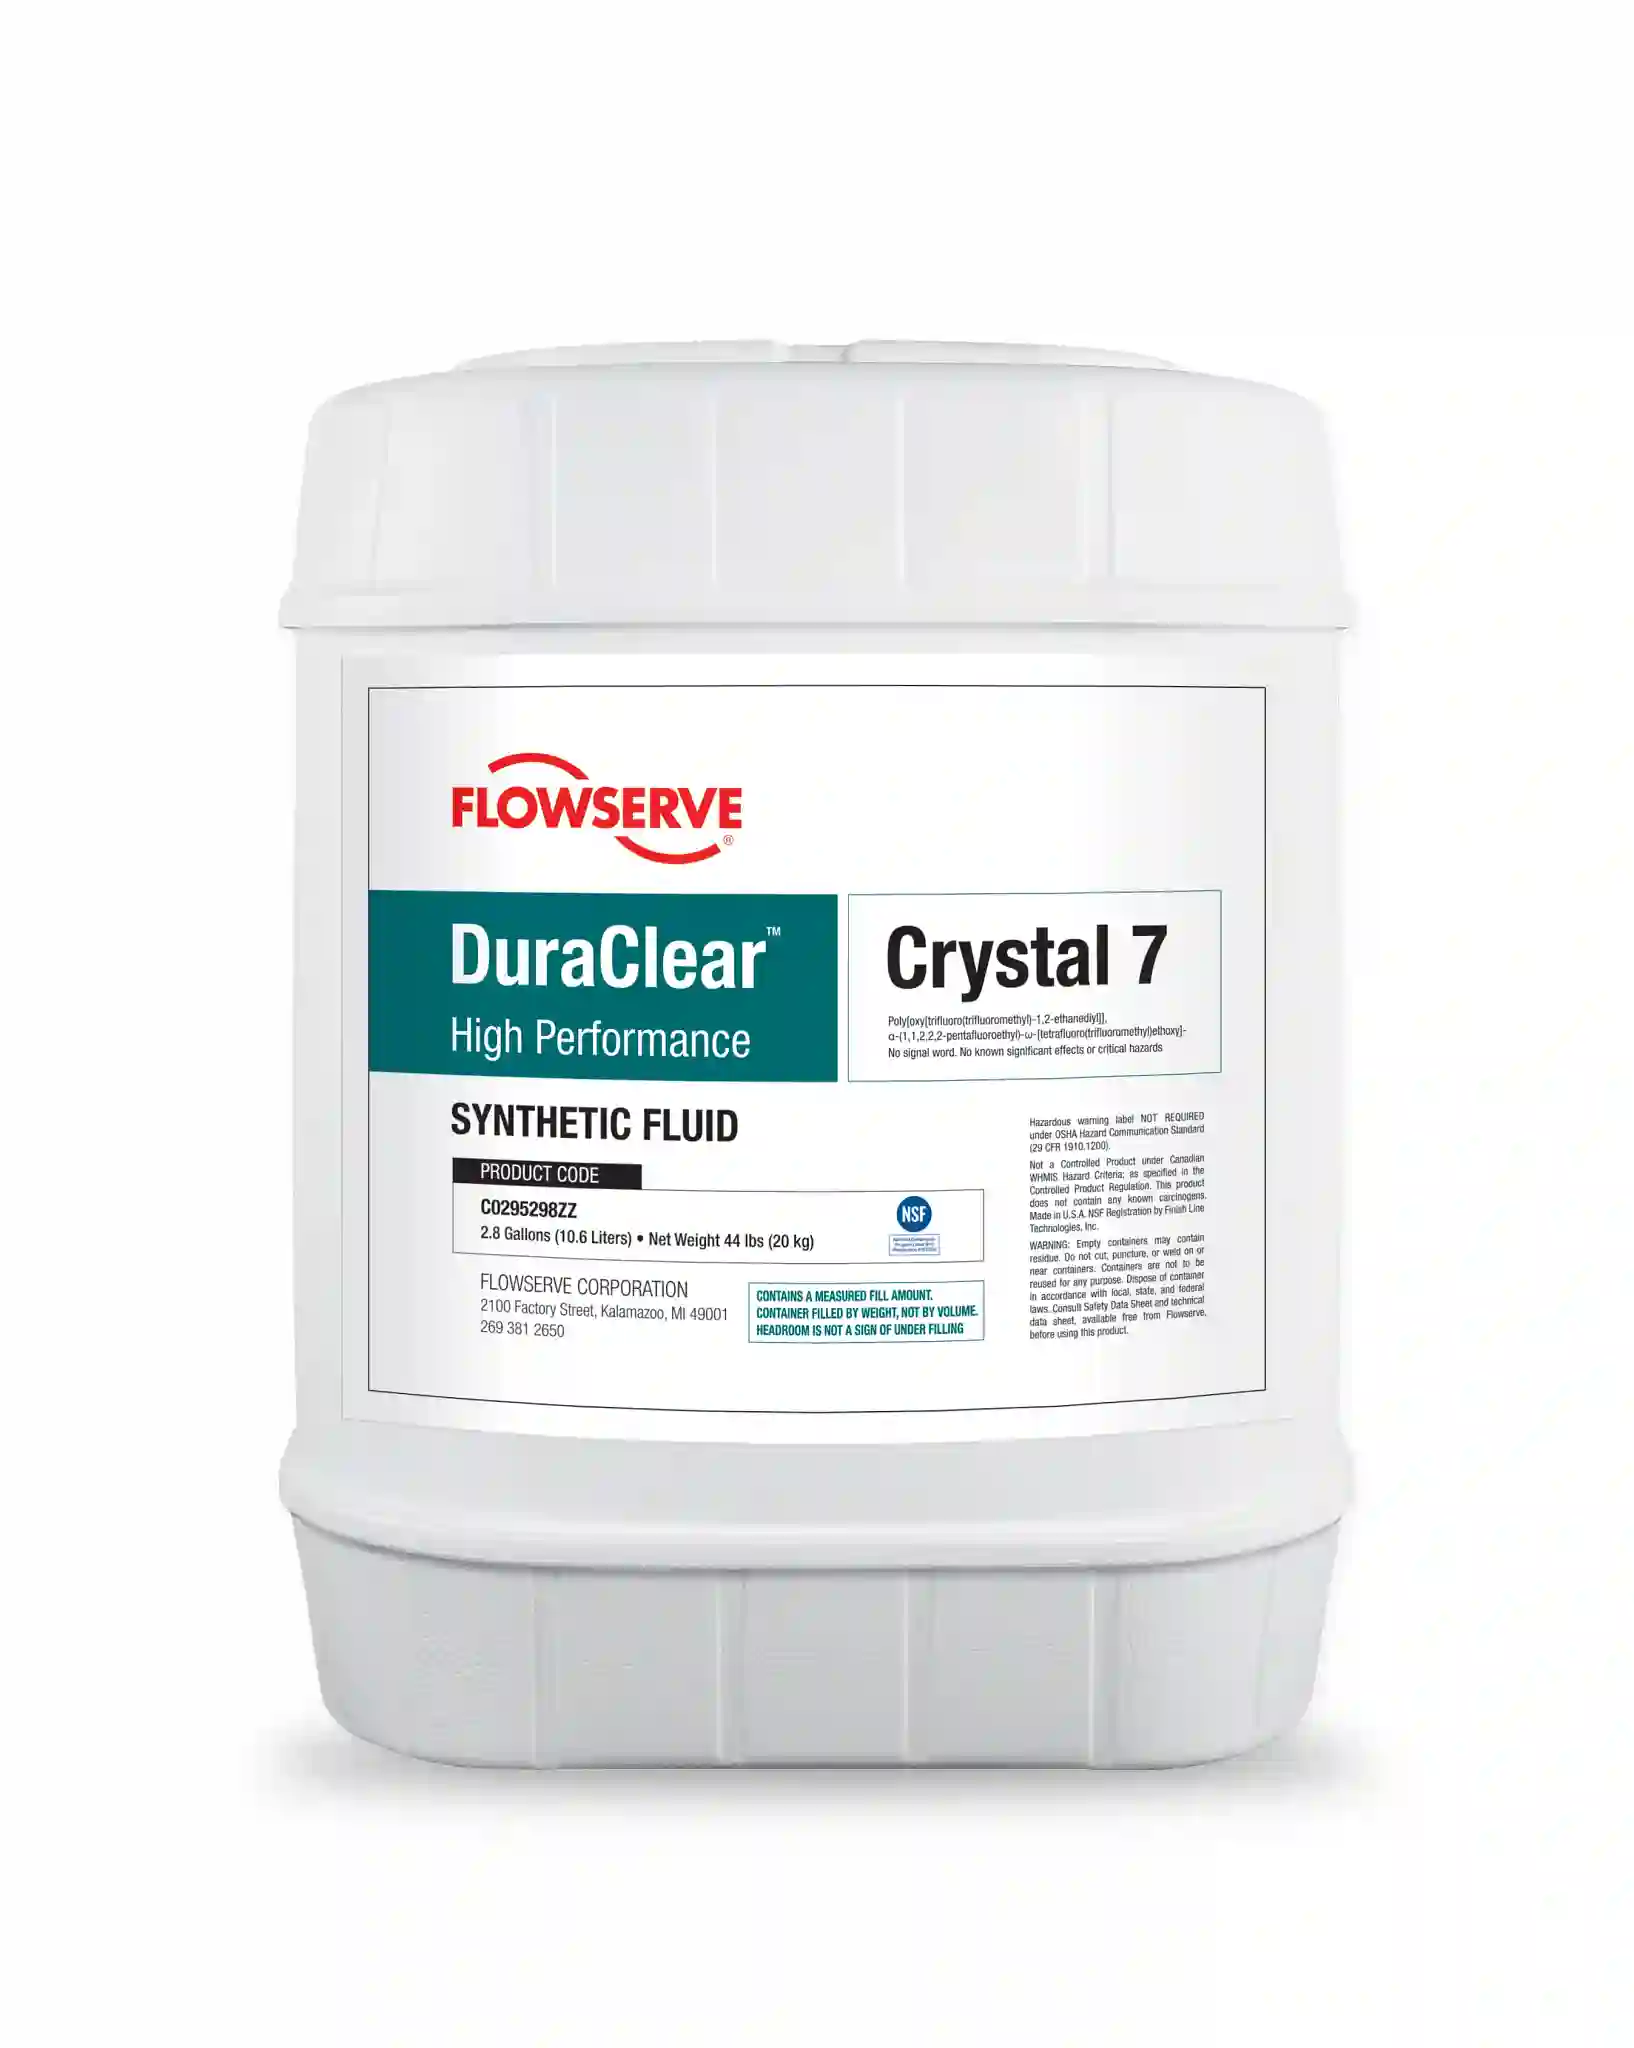 DuraClear Synthetic Fluid